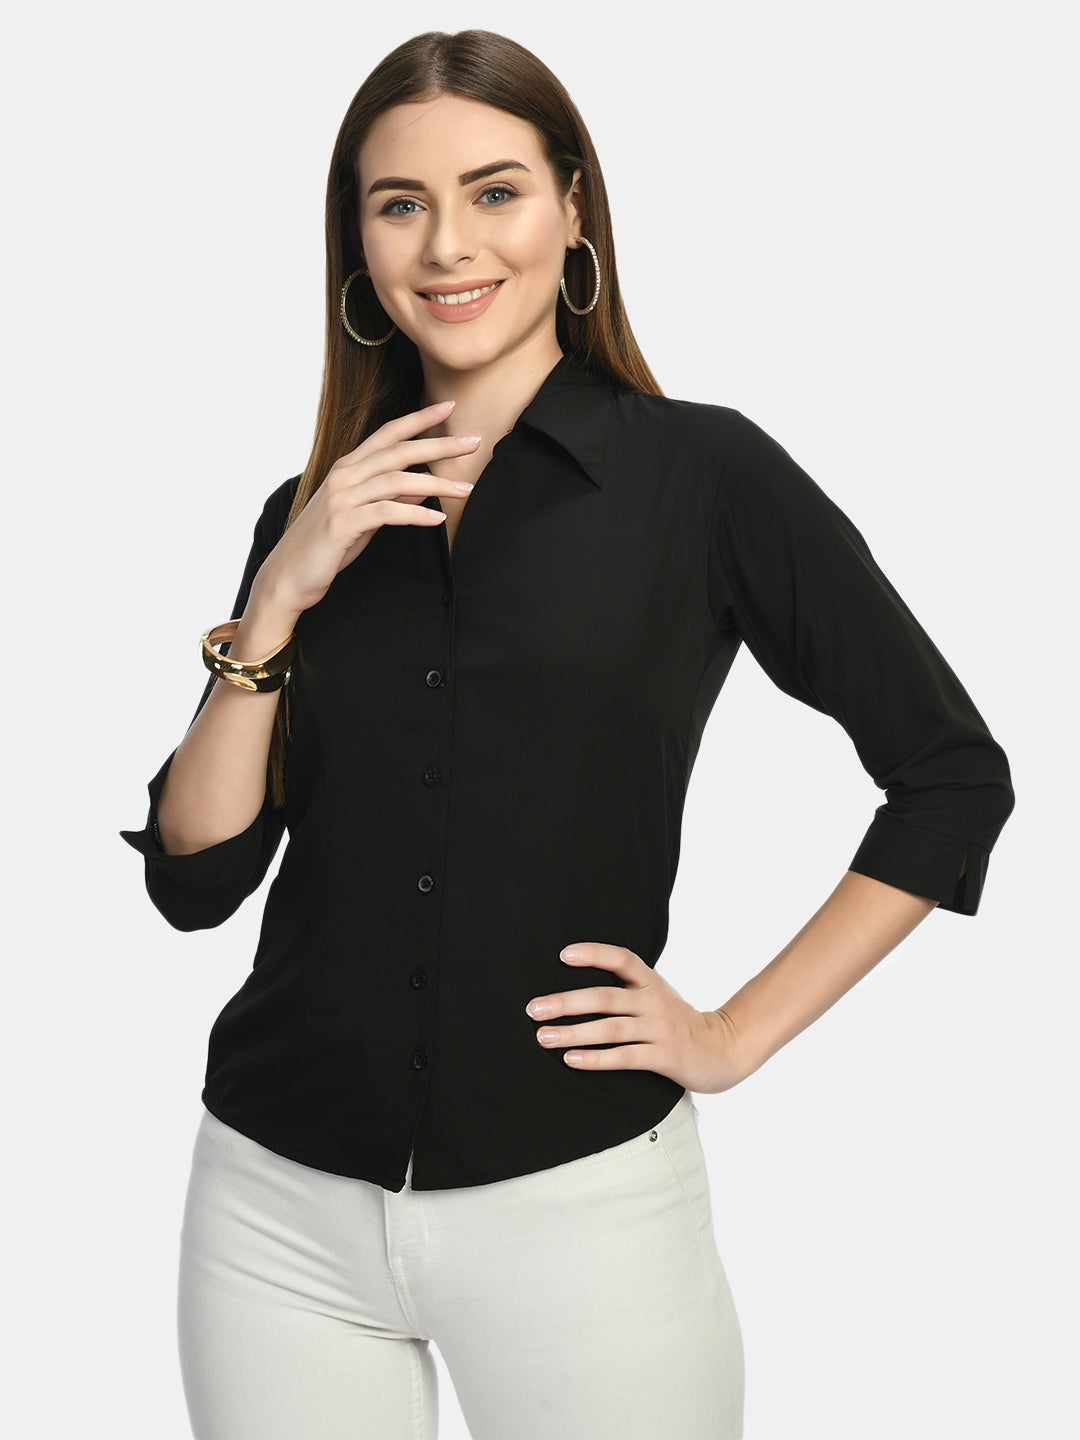 Wahe-NOOR Women's Black Formal Shirt - Distacart